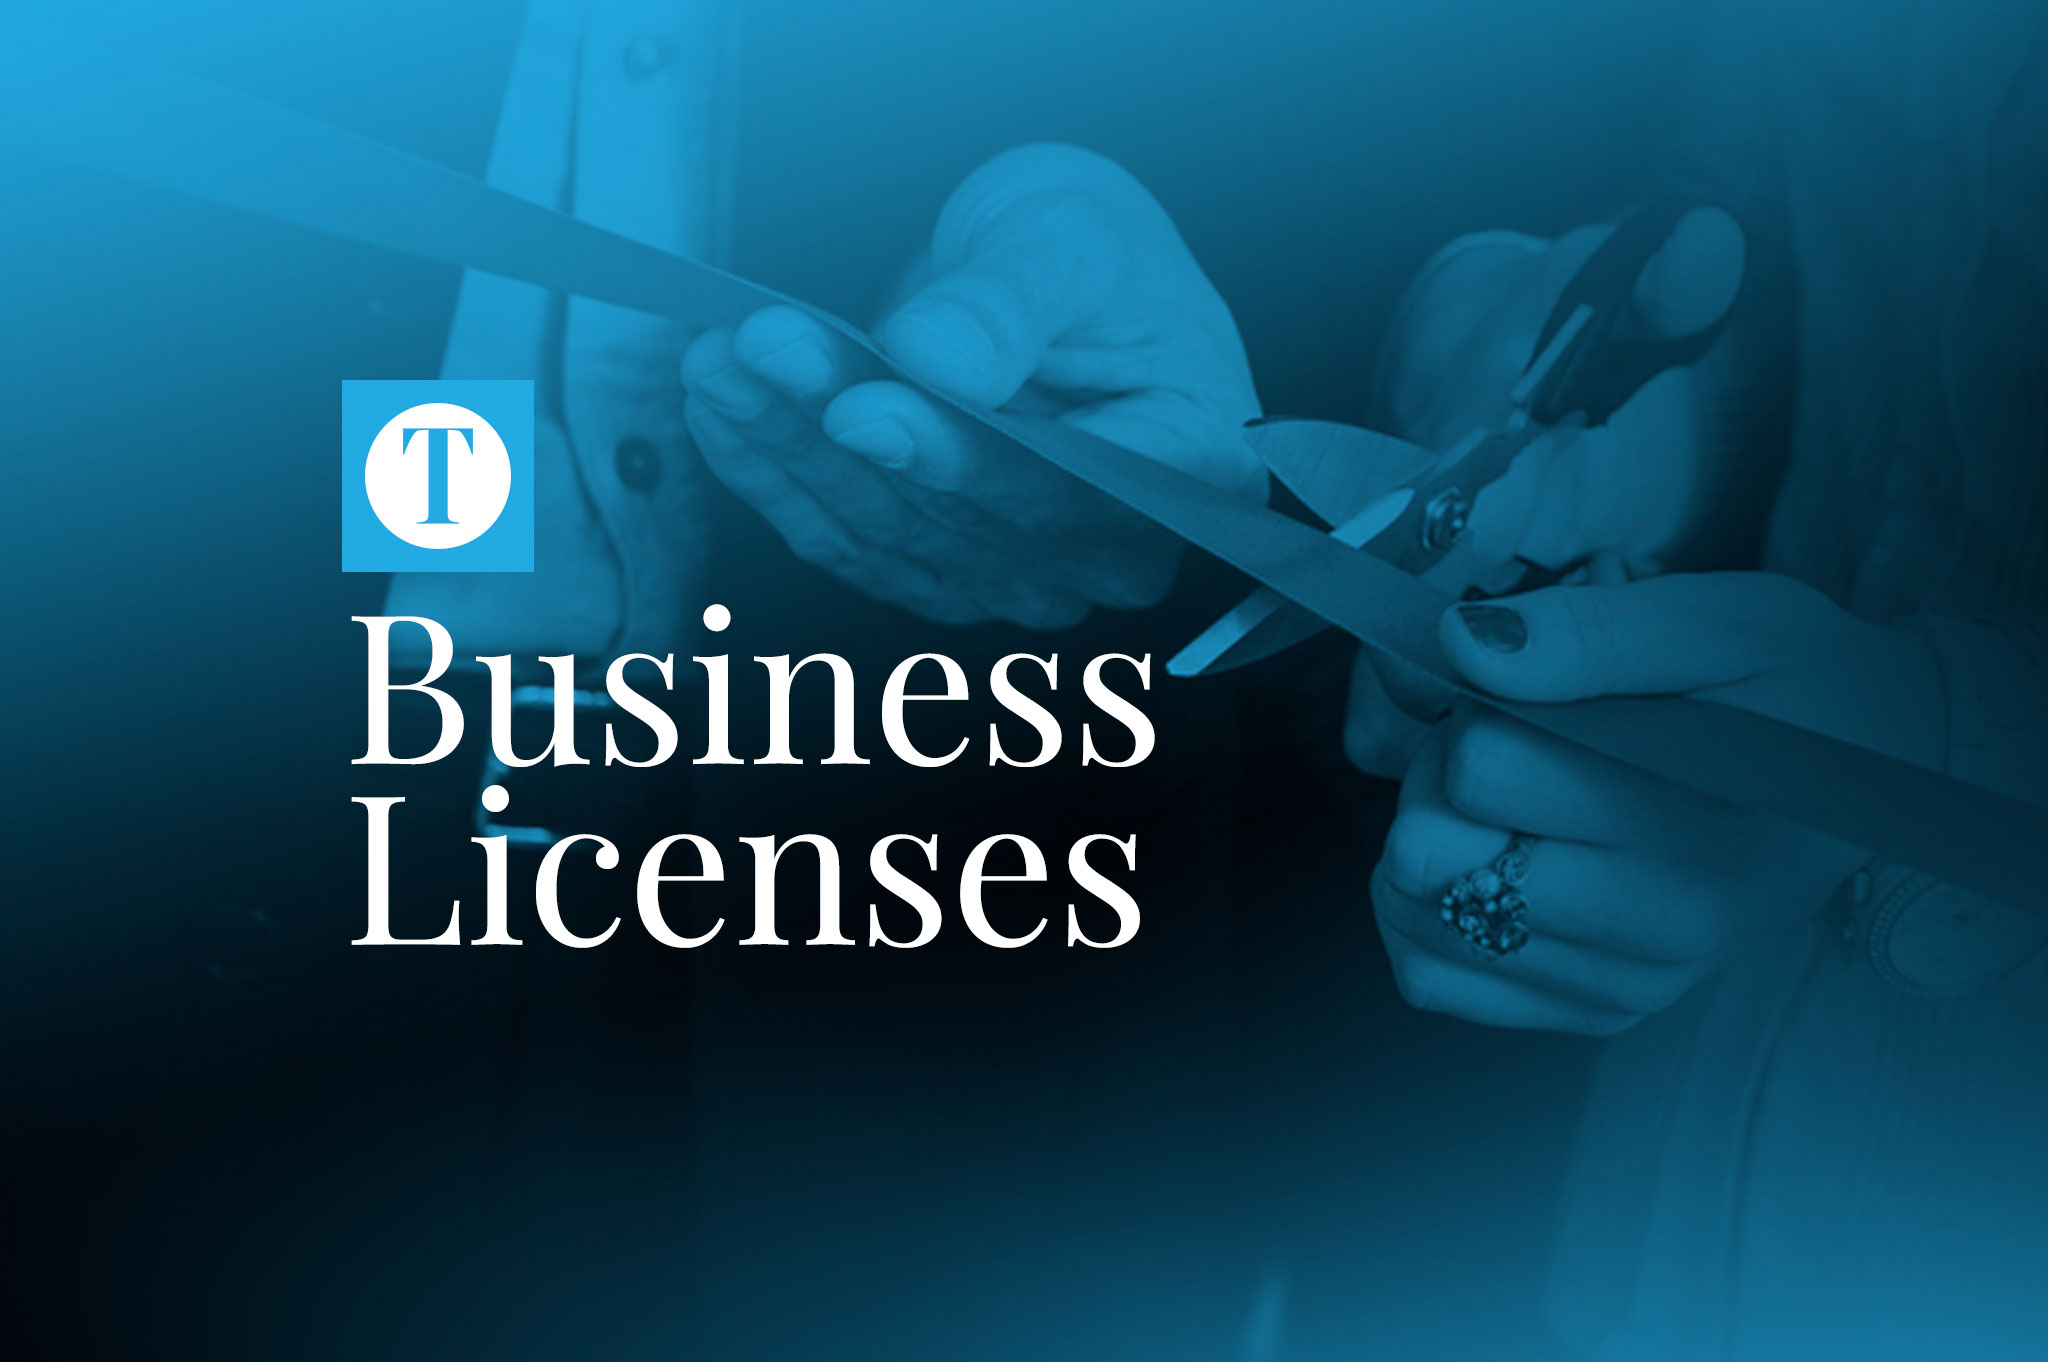   
																Business Licenses: Dec. 12, 2022 
															 